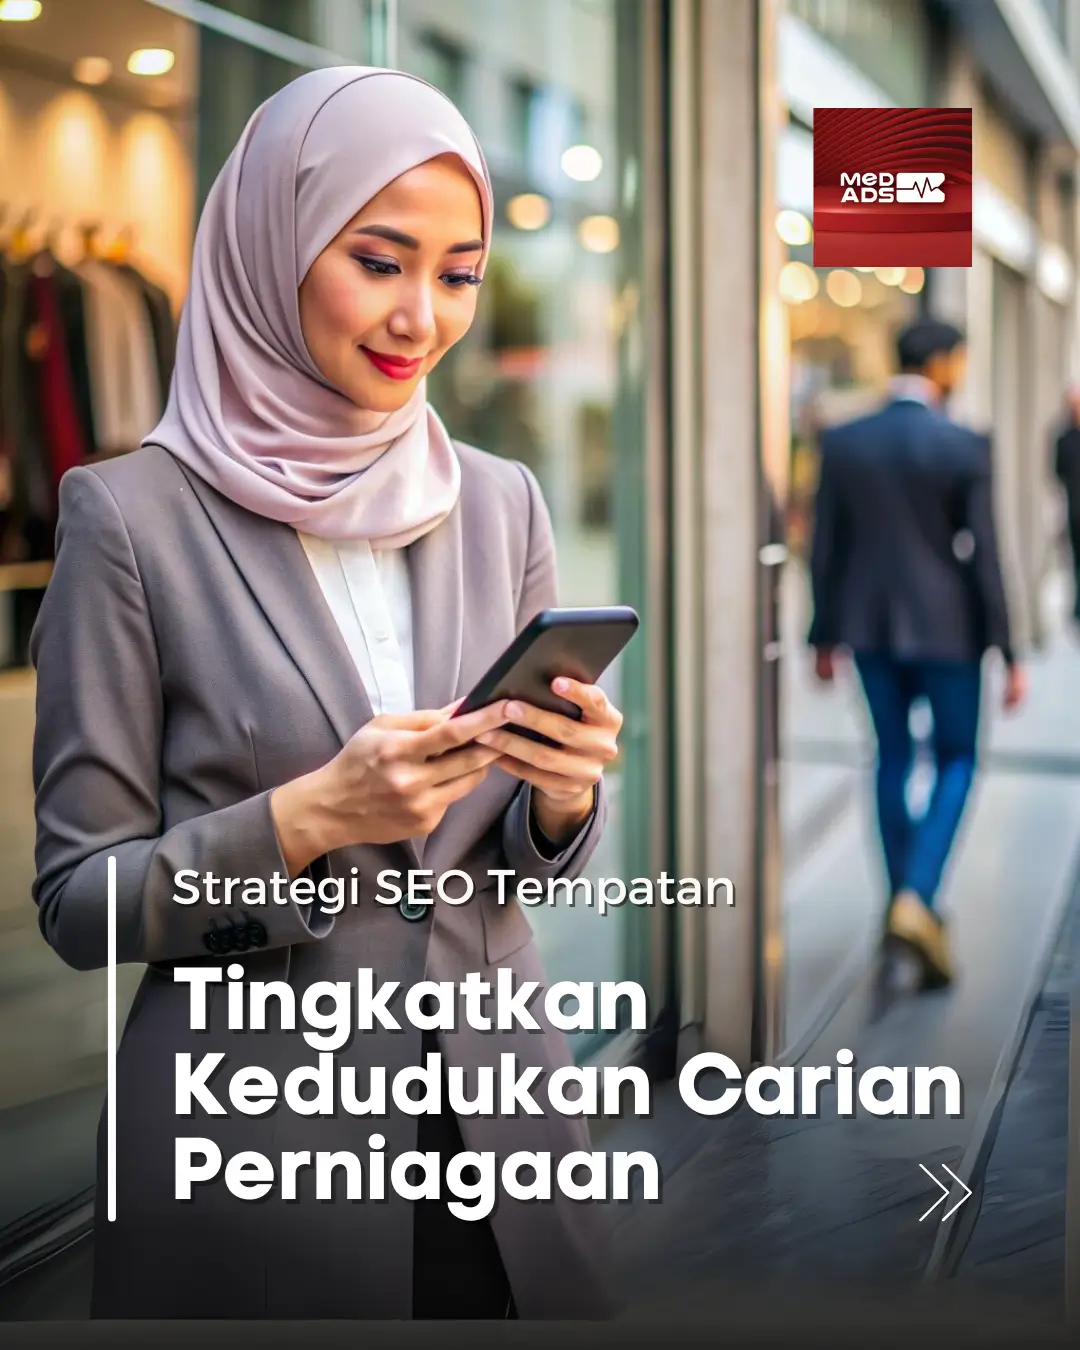 Strategi SEO Tempatan untuk Meningkatkan Kedudukan Carian Perniagaan Anda di Shah Alam, Selangor